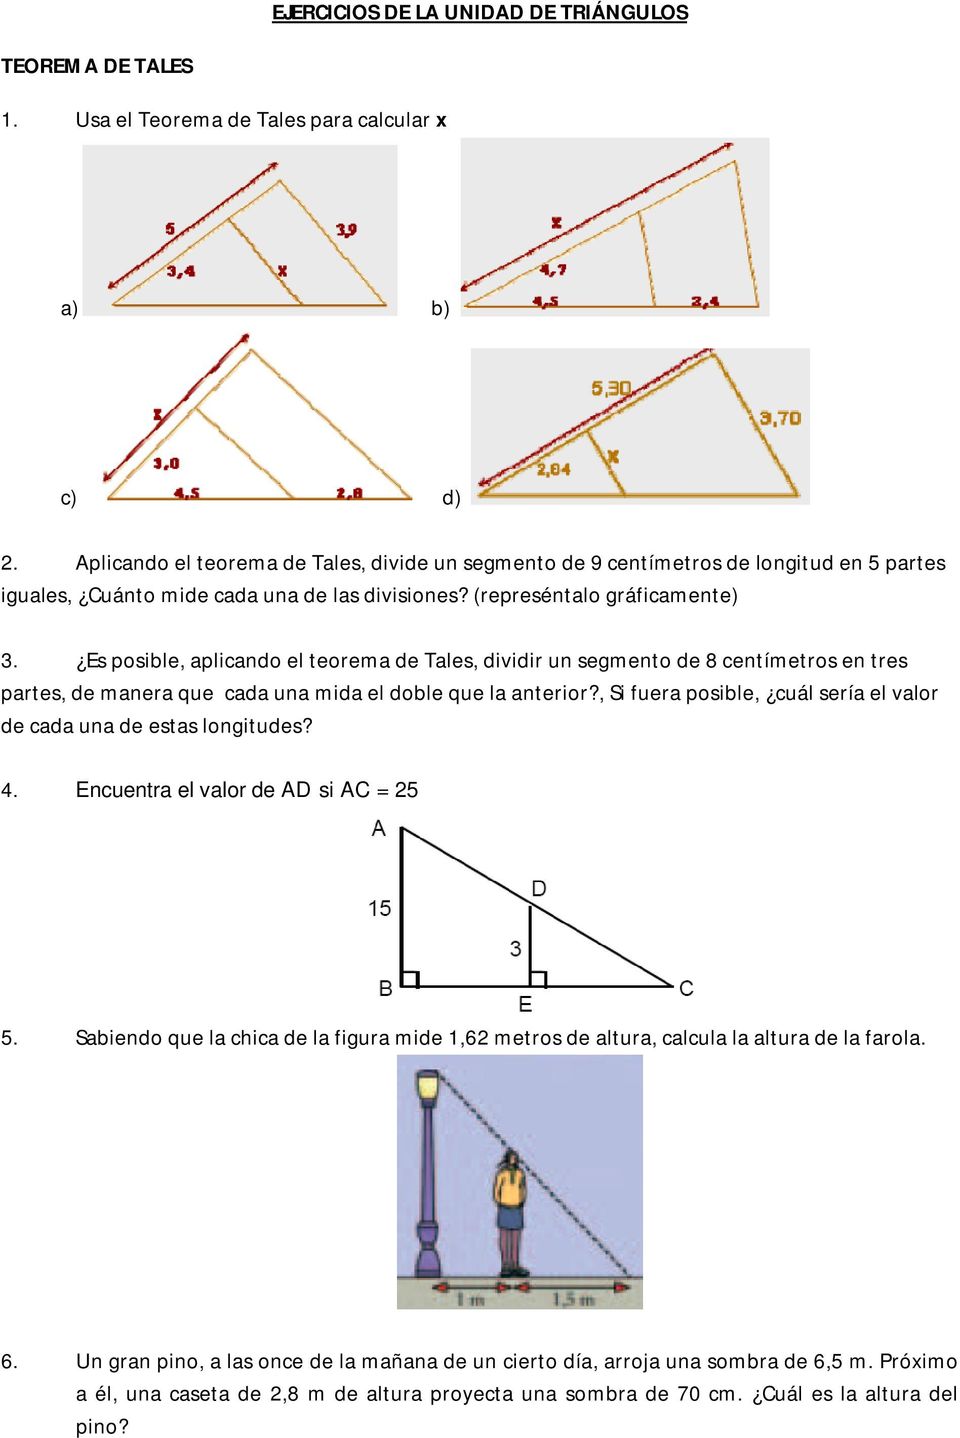 Es posible, aplicando el teorema de Tales, dividir un segmento de 8 centímetros en tres partes, de manera que cada una mida el doble que la anterior?